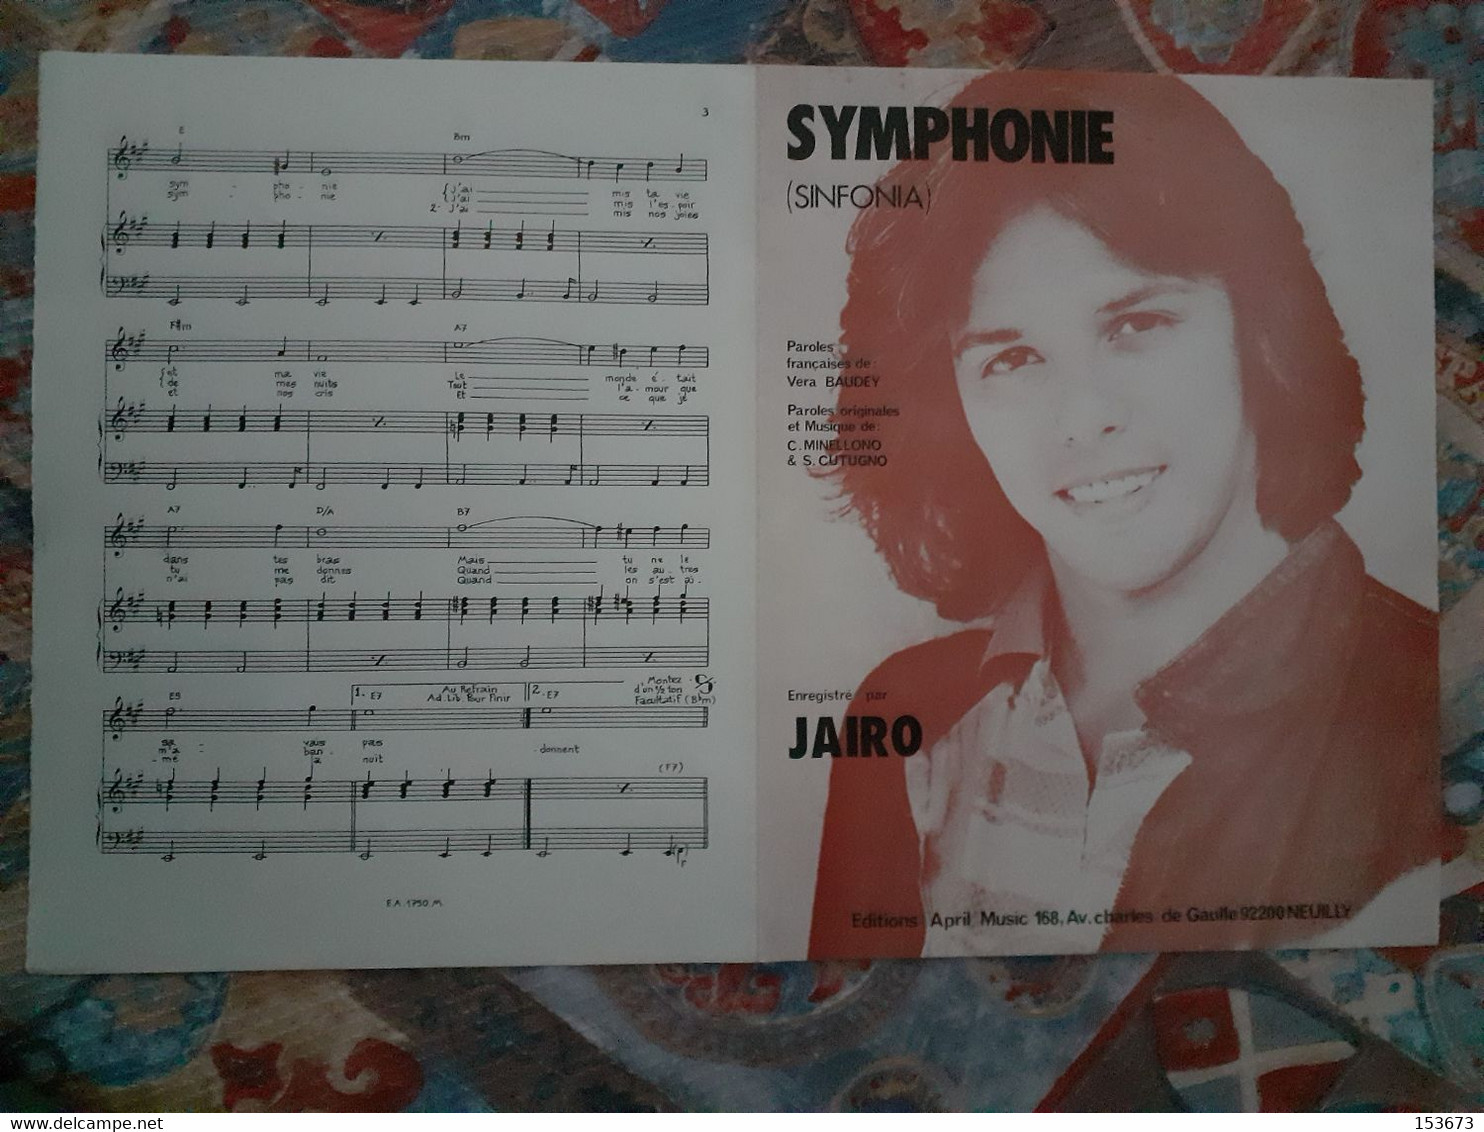 Partition "SYMPHONIE (Sinfonia)" éditions April Music - Neuilly 1981, Enregistré Par JAIRO. - Chant Soliste